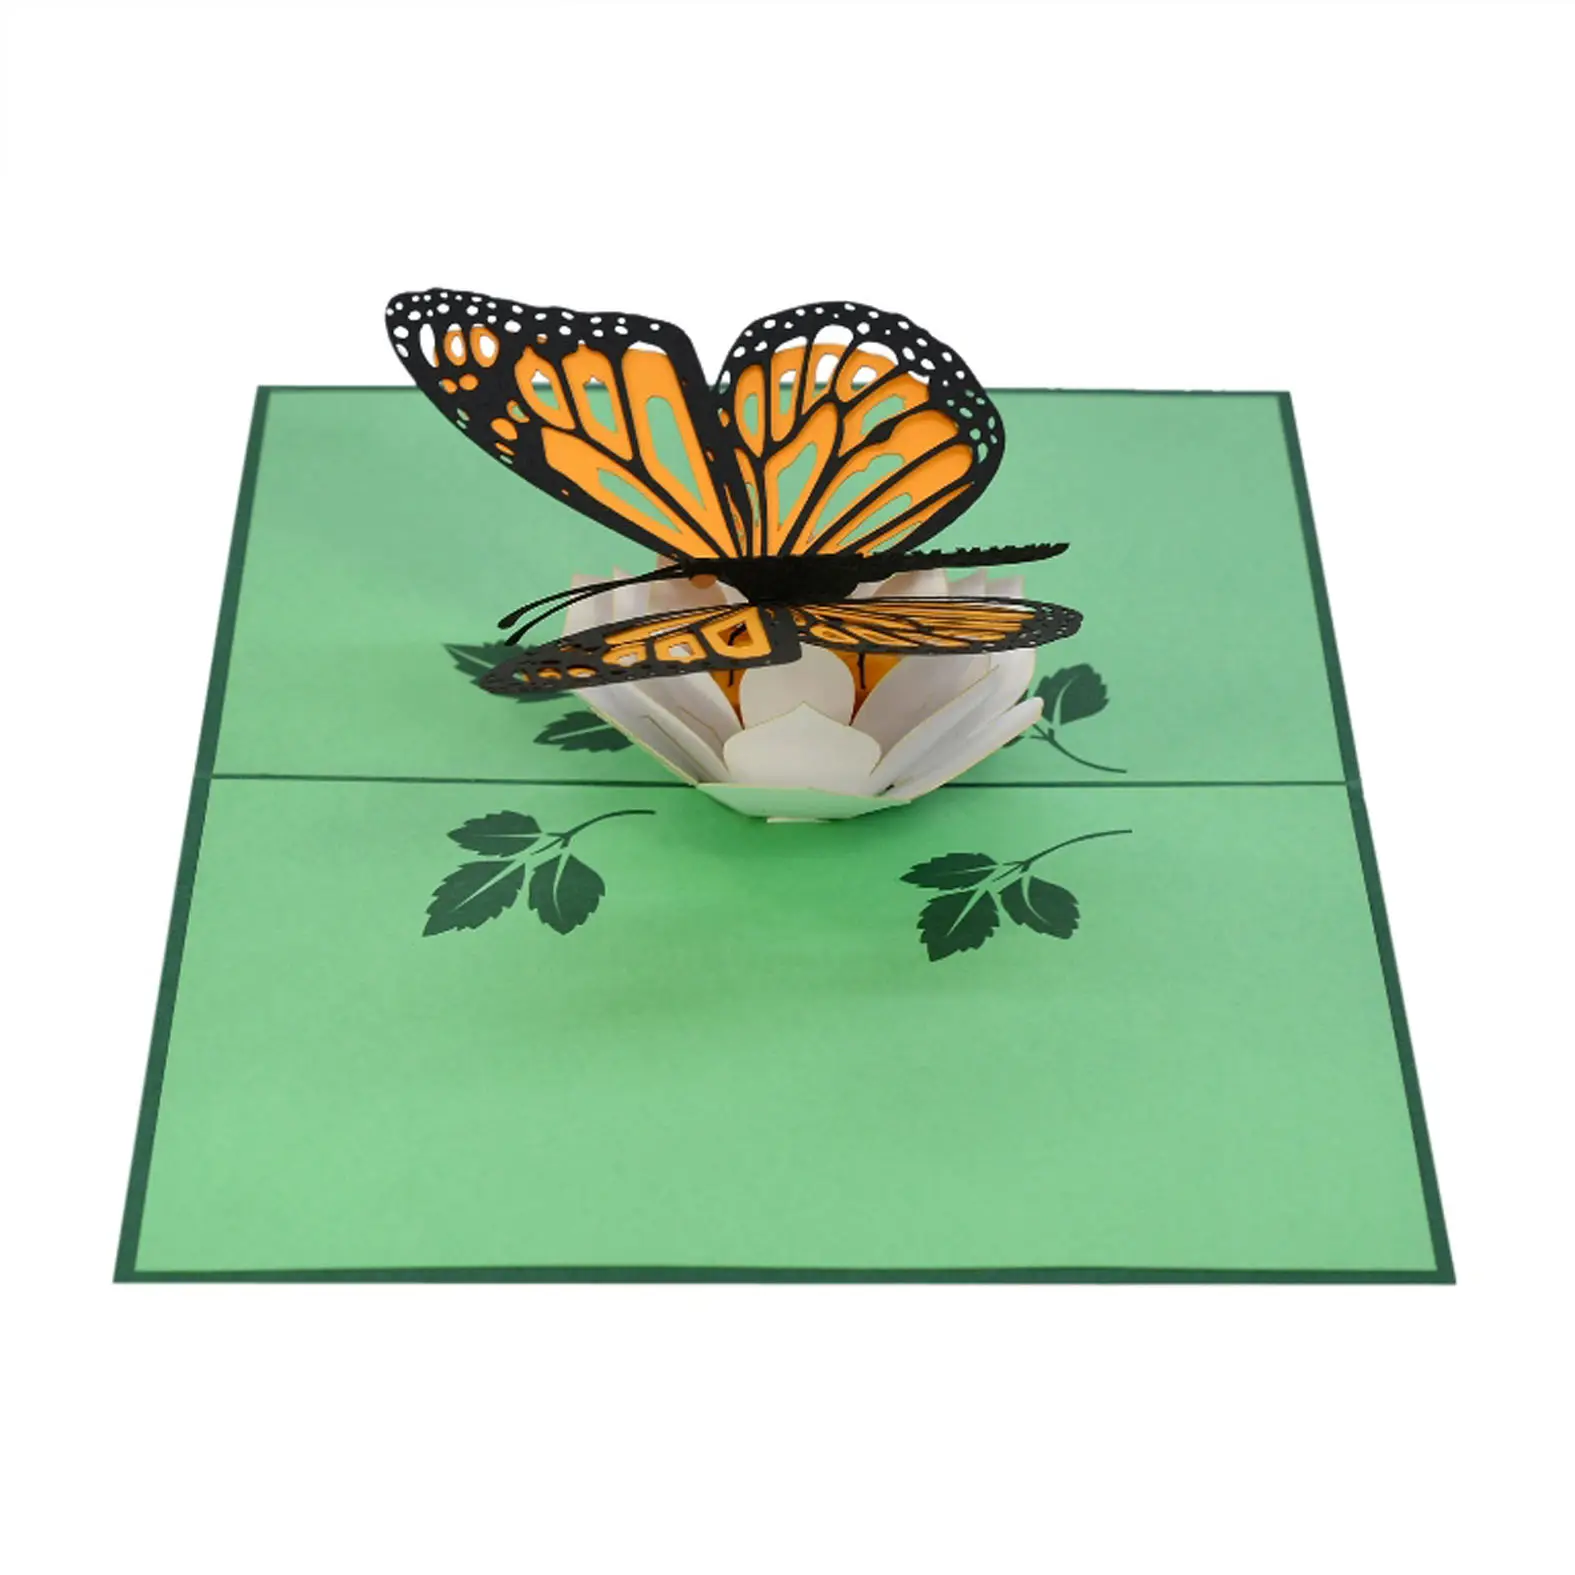 Новые 3D поздравительные открытки с бабочками на день рождения жены или подруги оптом из всплывающих бумаг из Вьетнама